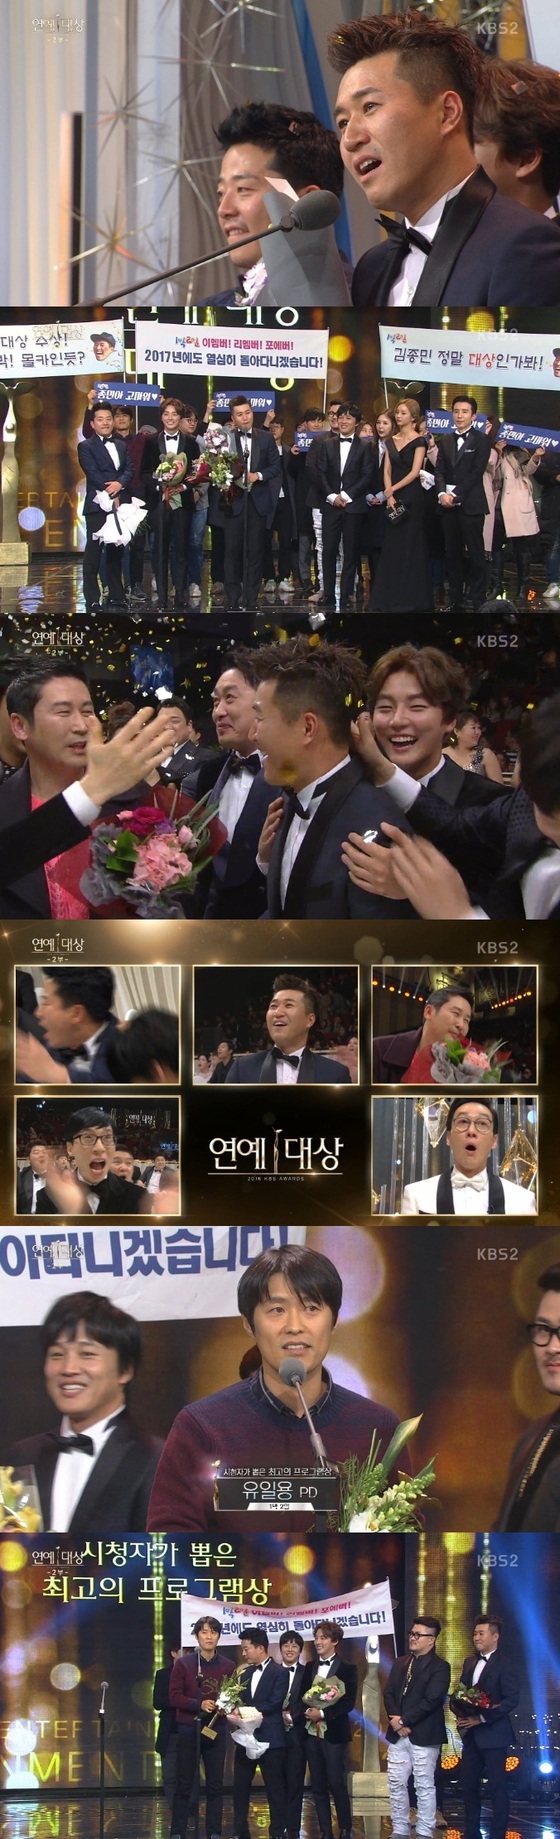 김종민이 '2016 KBS 연예대상' 대상을 받았다. © News1star / KBS2 '2016 KBS 연예대상' 캡처